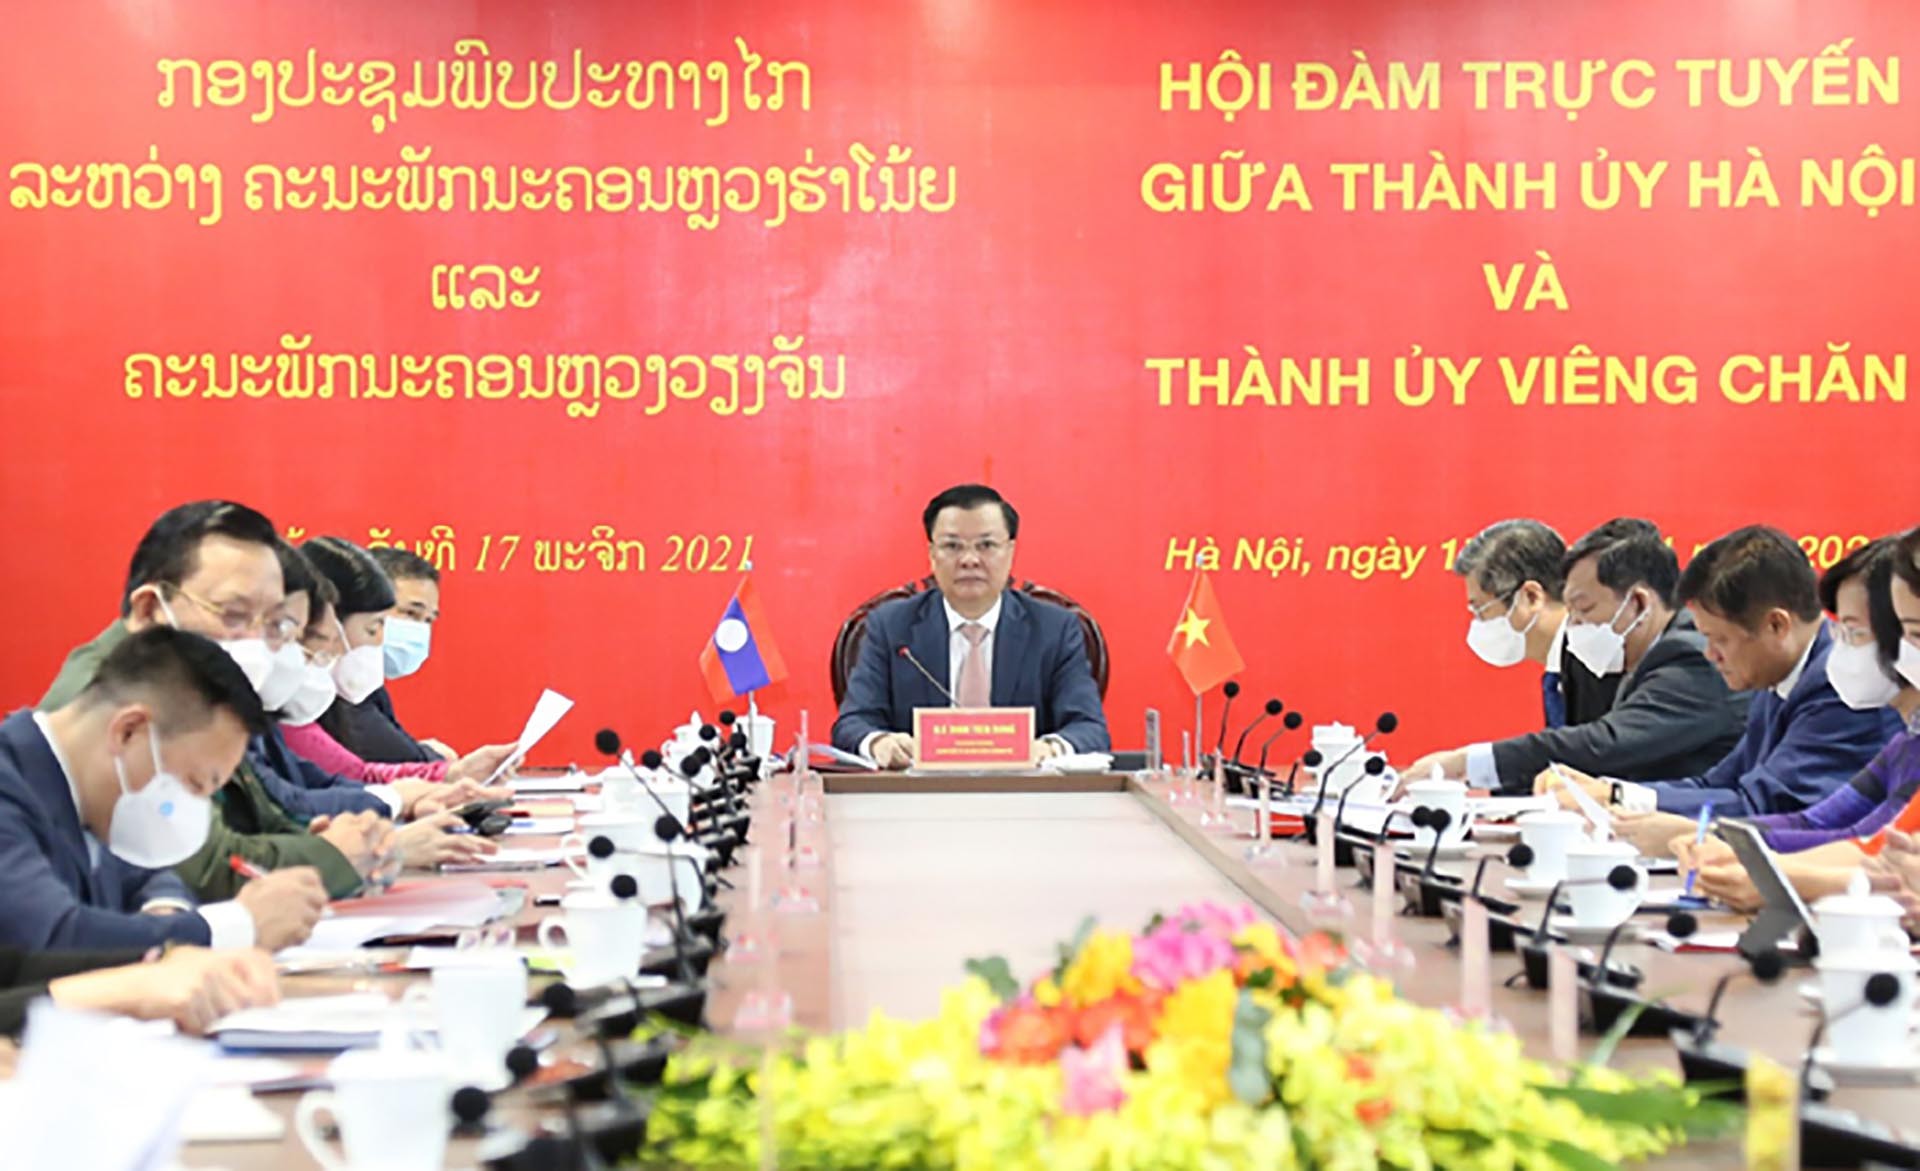 Quang cảnh hội đàm tại điểm cầu Thành ủy Hà Nội